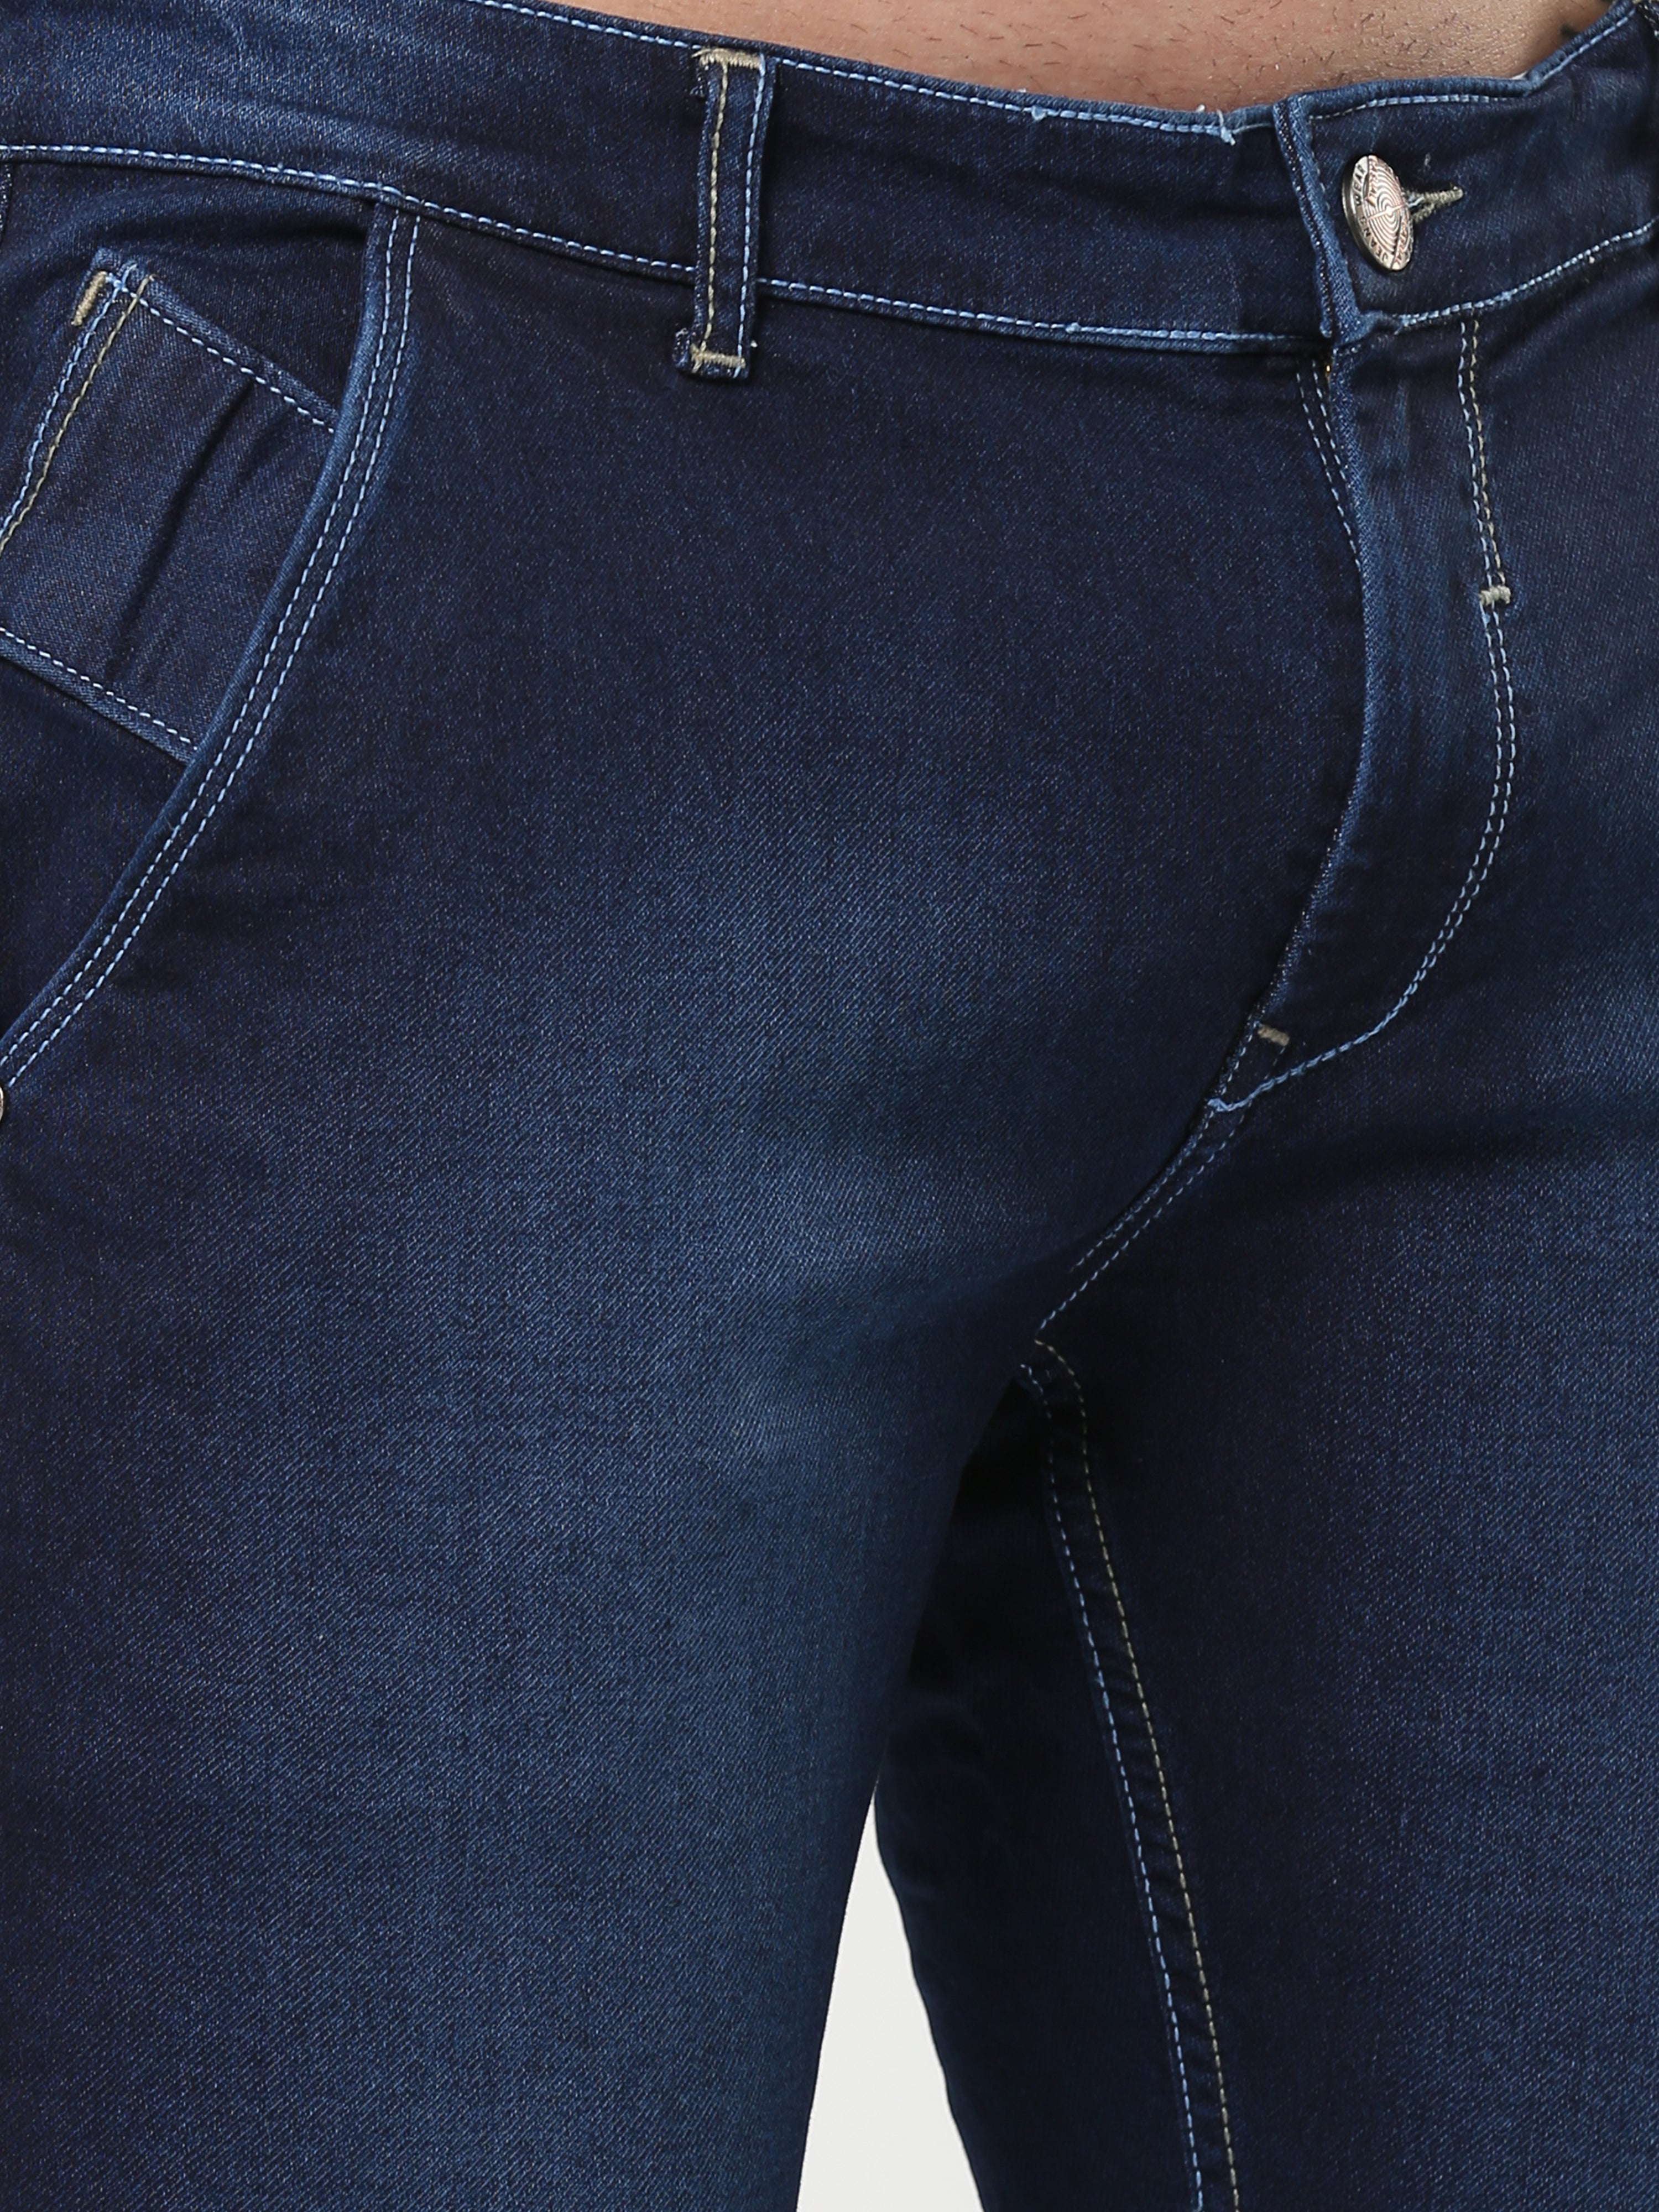 Branded Plain Indigo Blue Jeans For Men